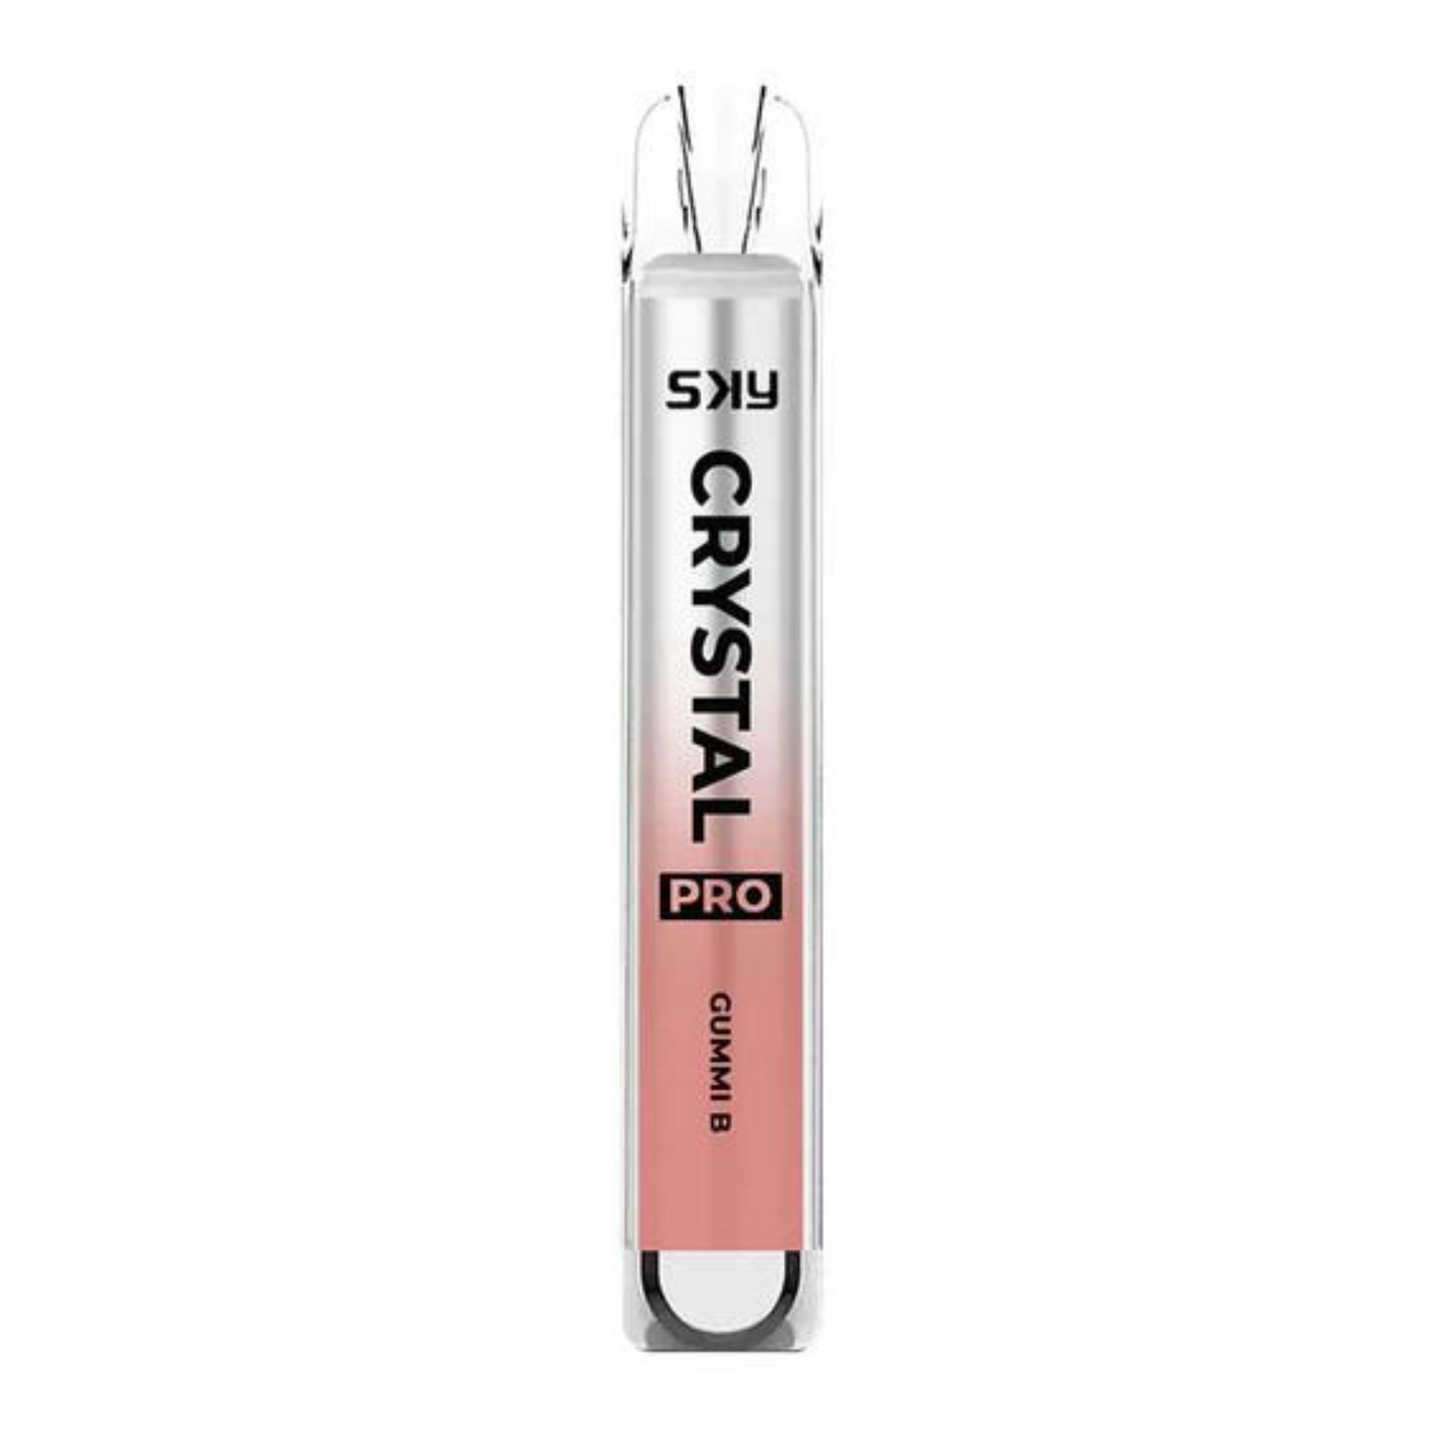 SKY Crystal Bar Pro 600 Puffs Disposable Vape